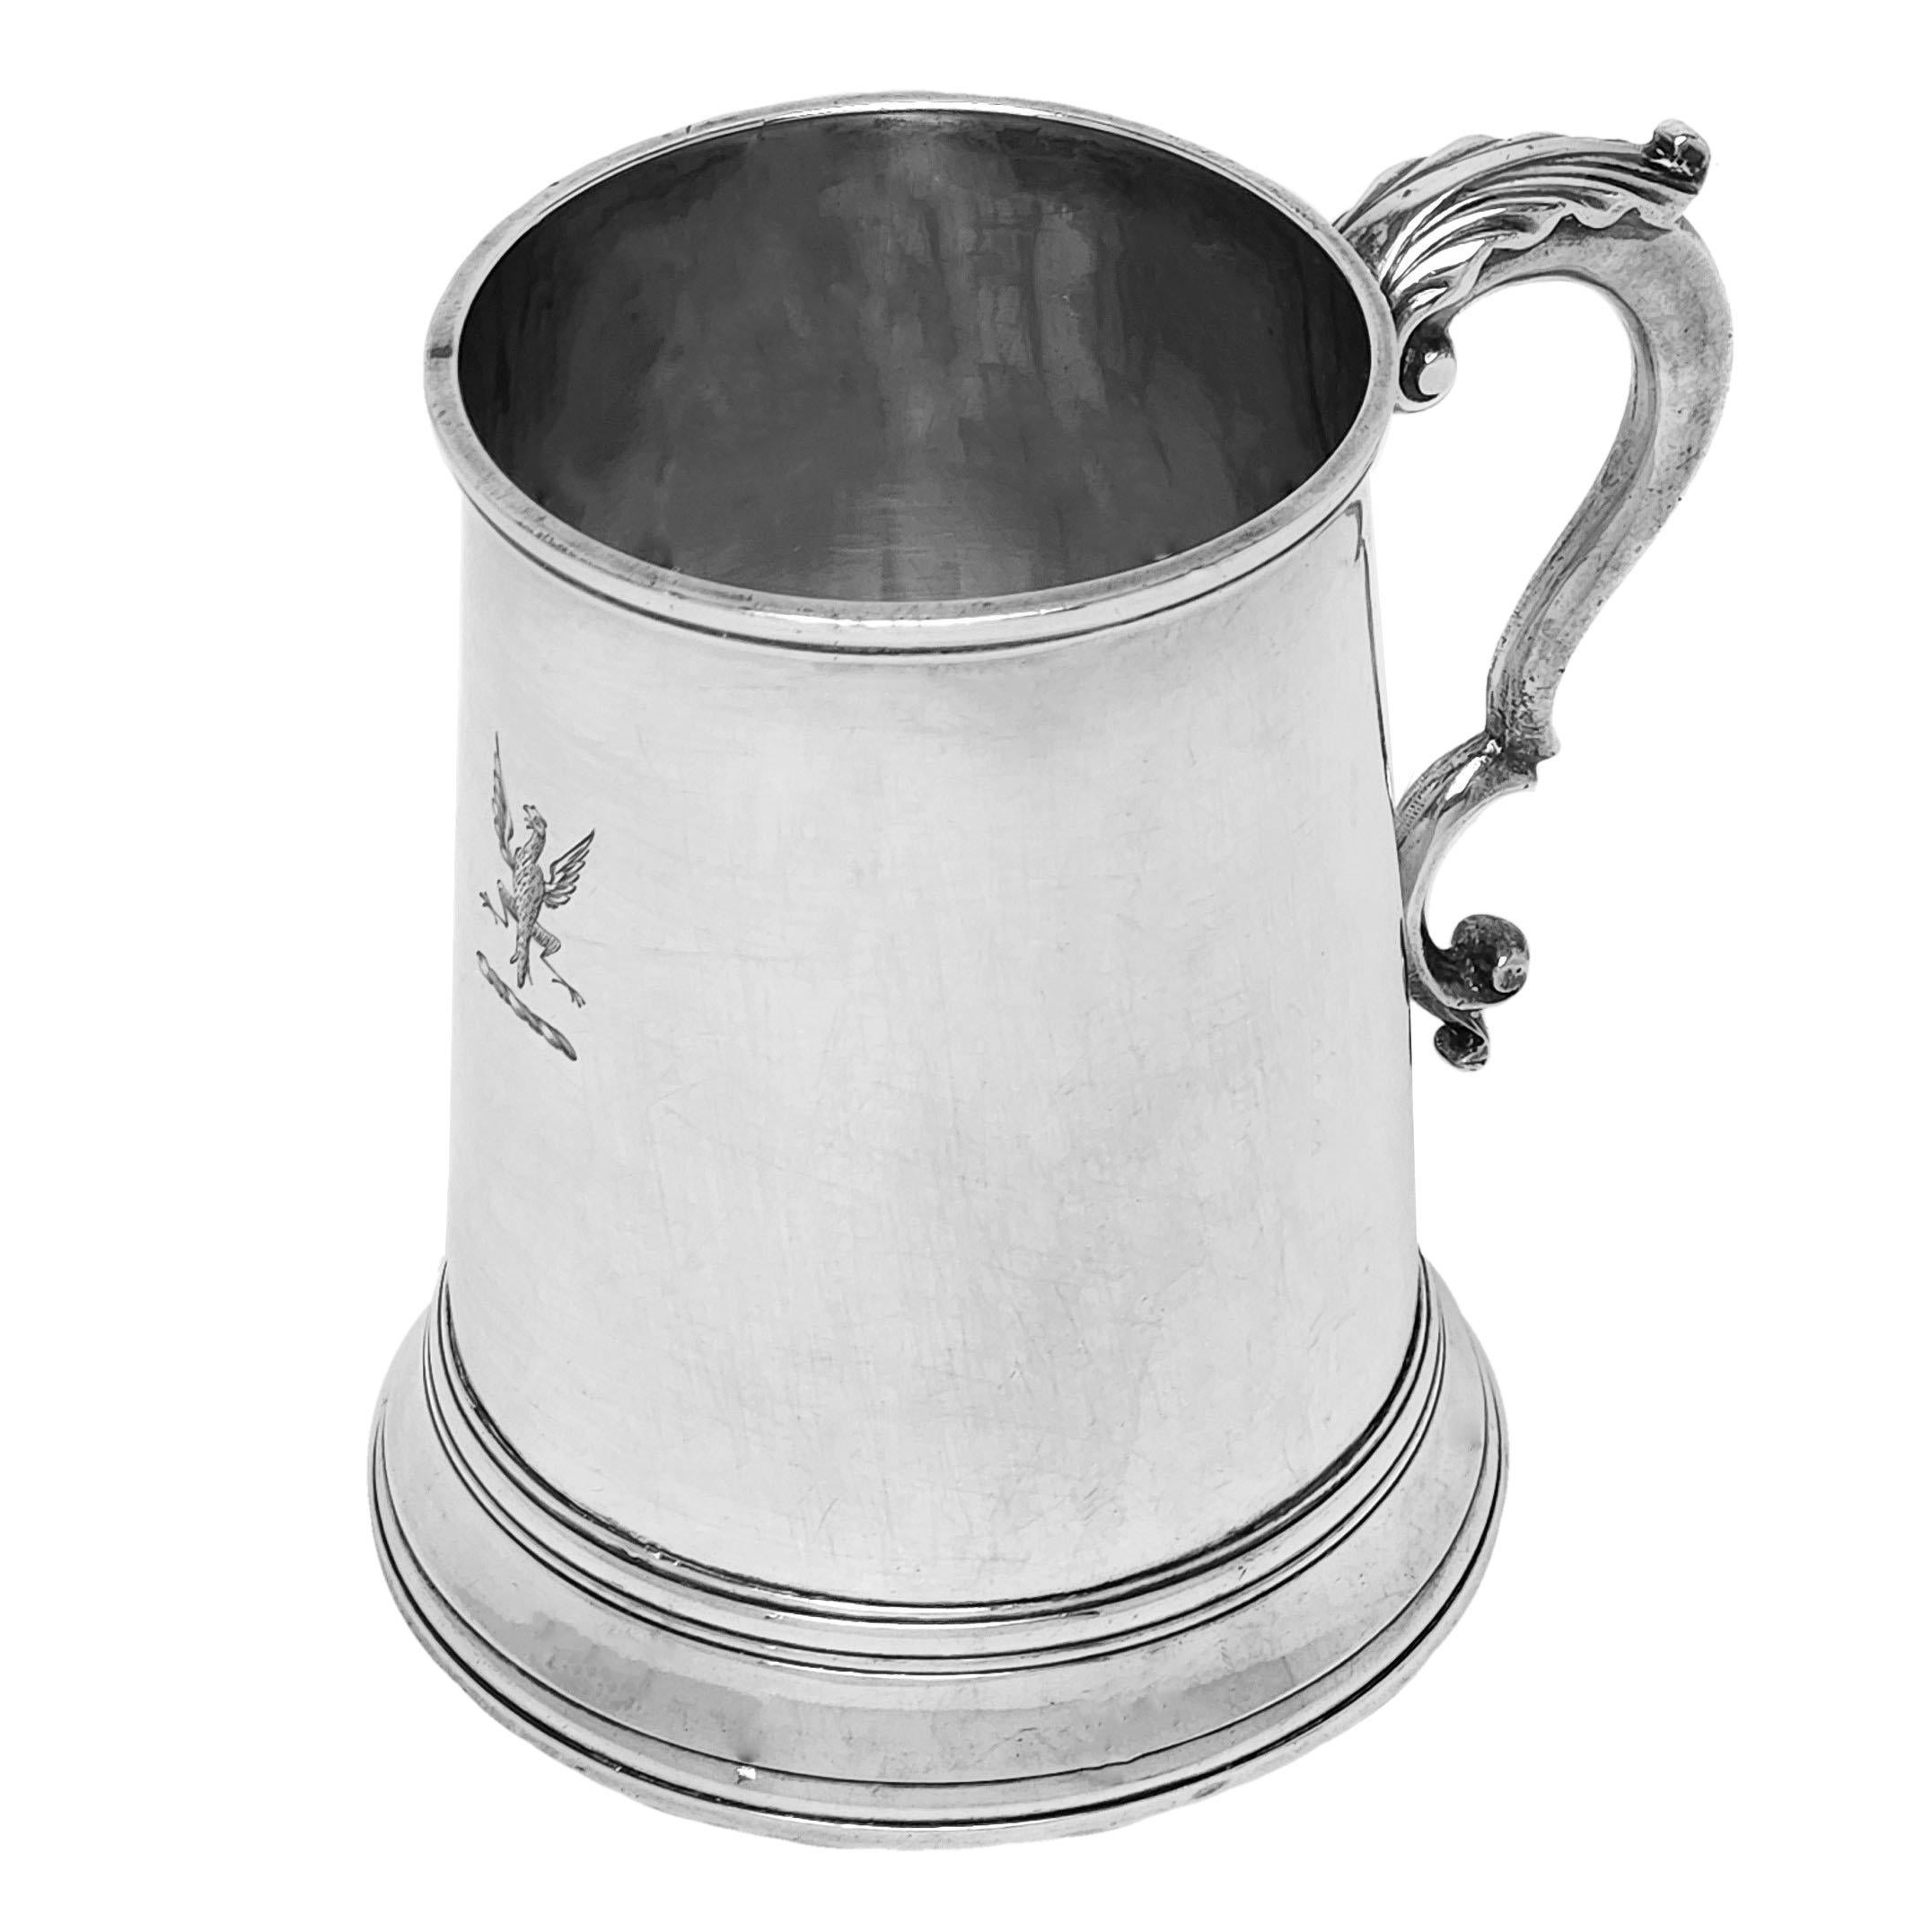 Ein klassischer antiker George III Sterling Silber Half Pint Becher mit einer traditionellen konischen zylindrischen Form. Der Becher hat einen gespreizten Fuß und einen mit Akanthusblättern verzierten Griff. Gegenüber dem Griff ist ein kleines